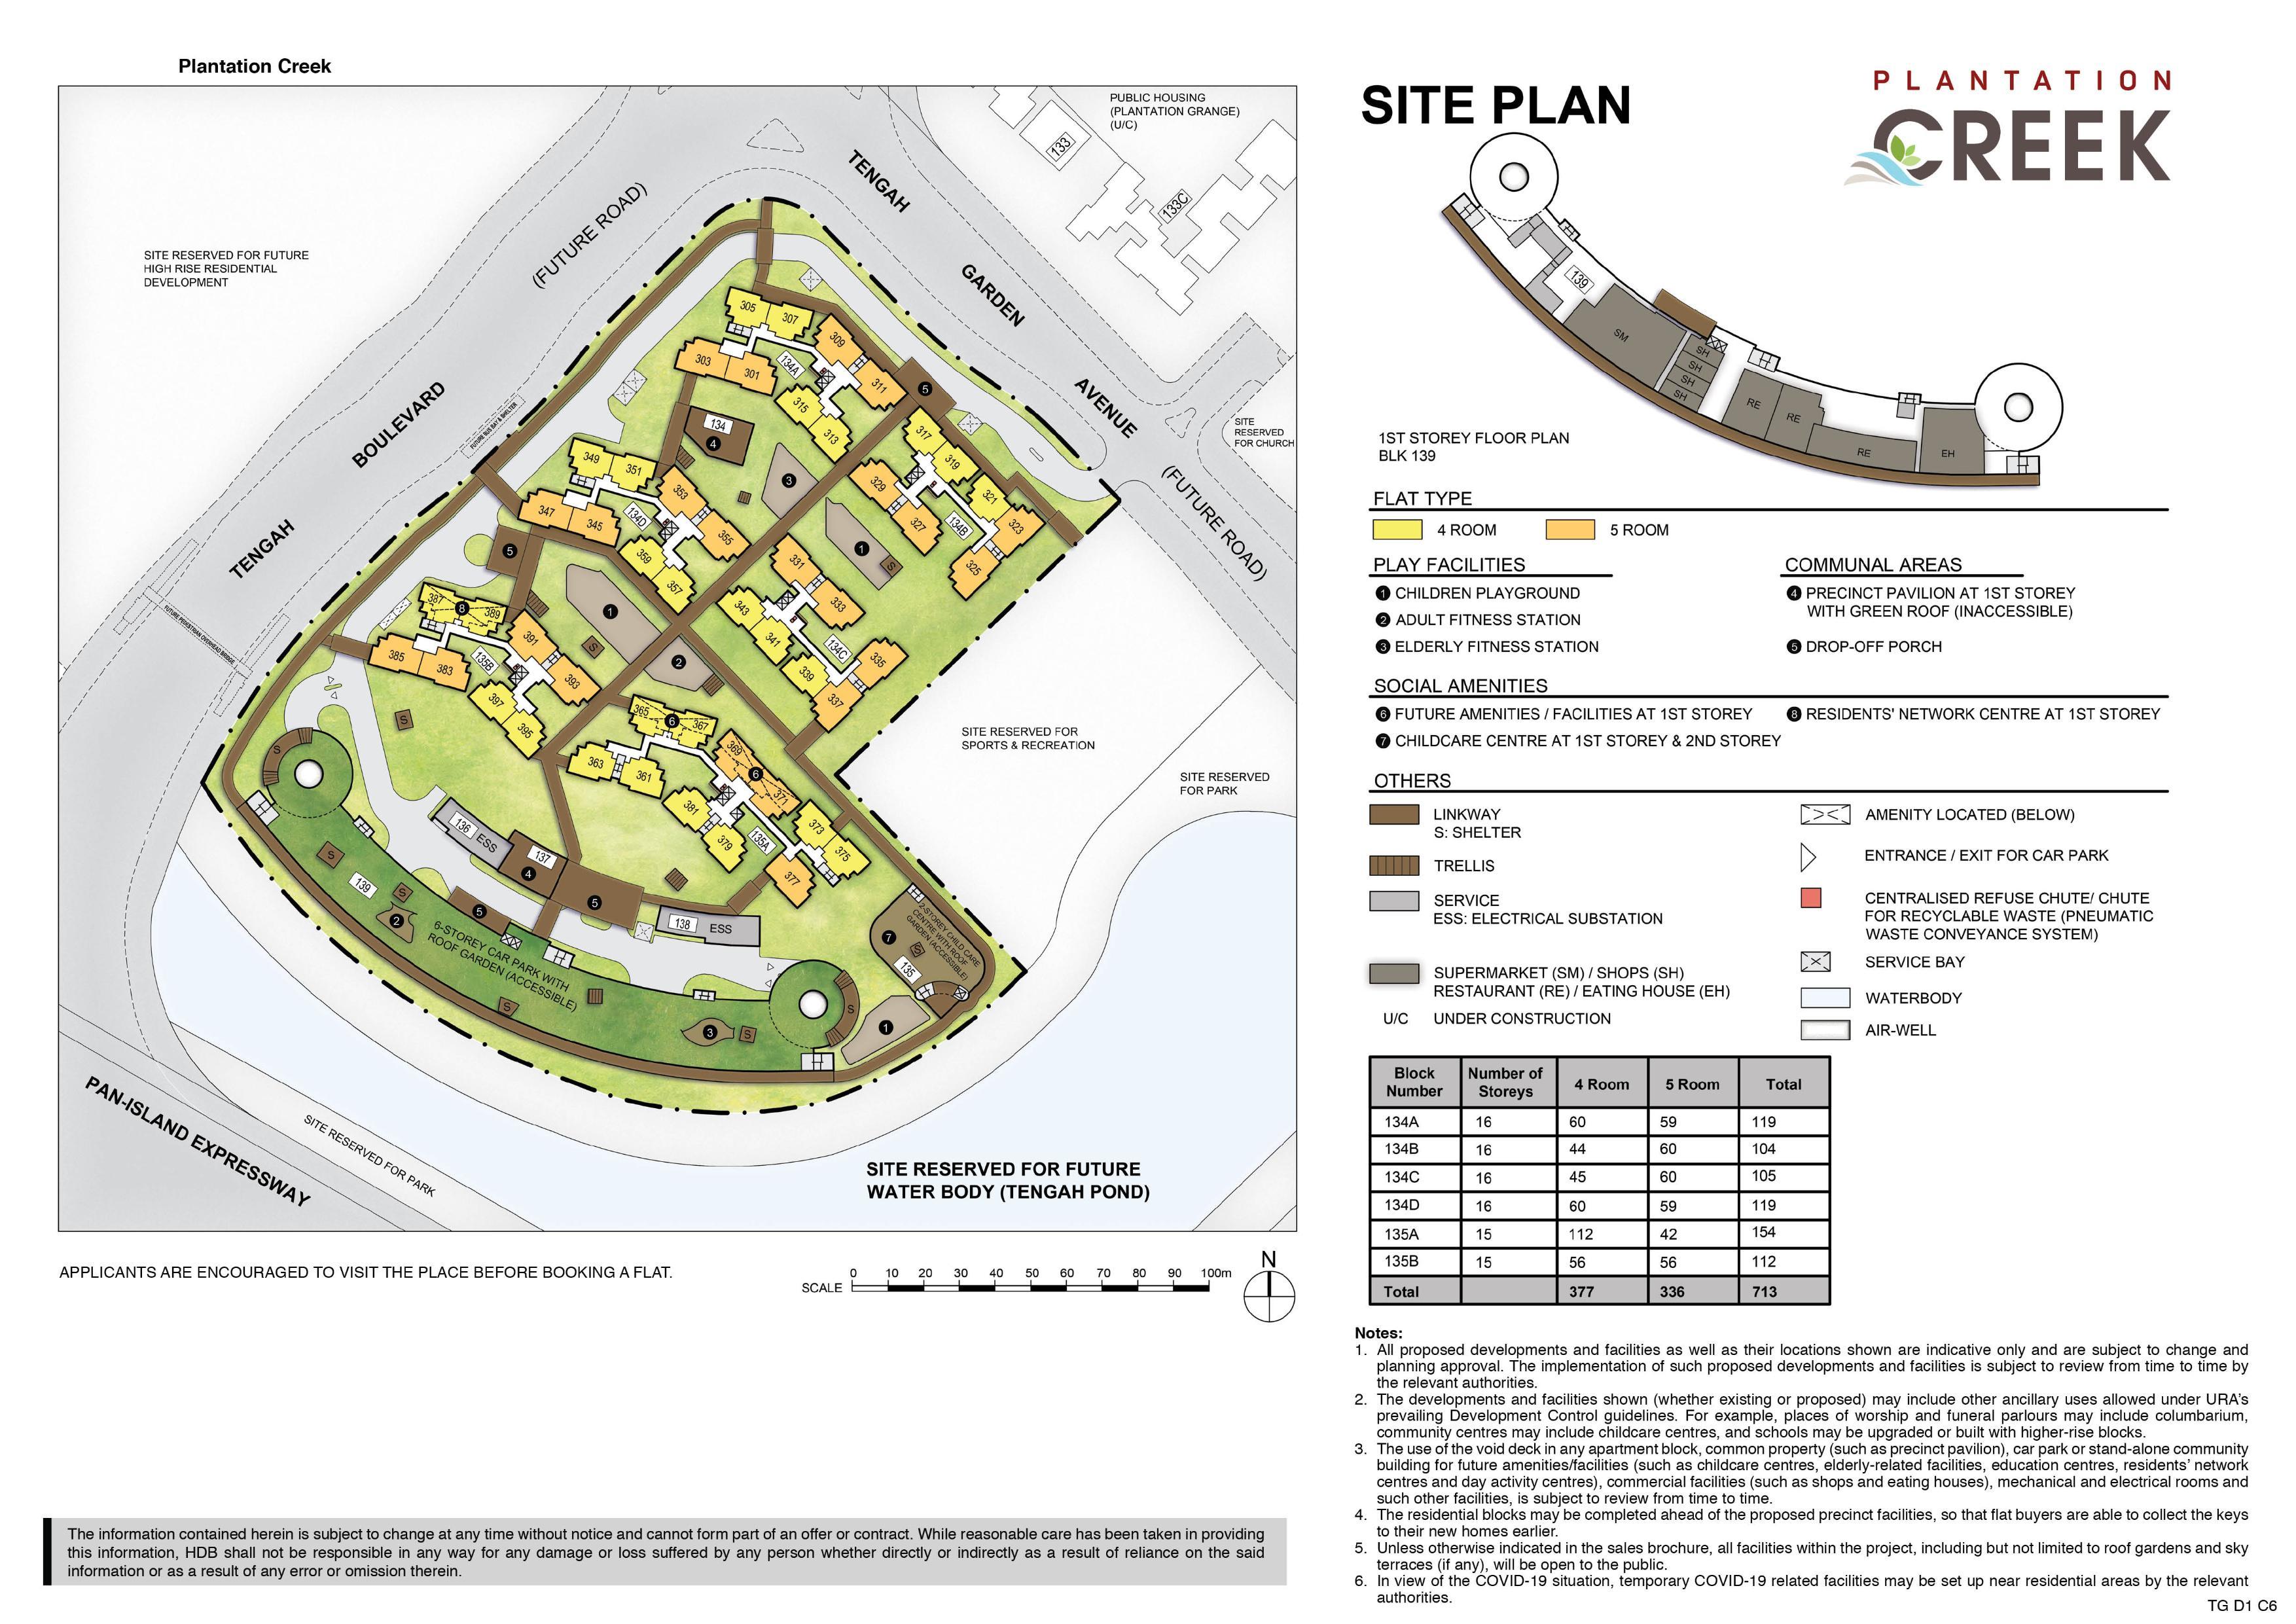 Plantation Creek site-plan